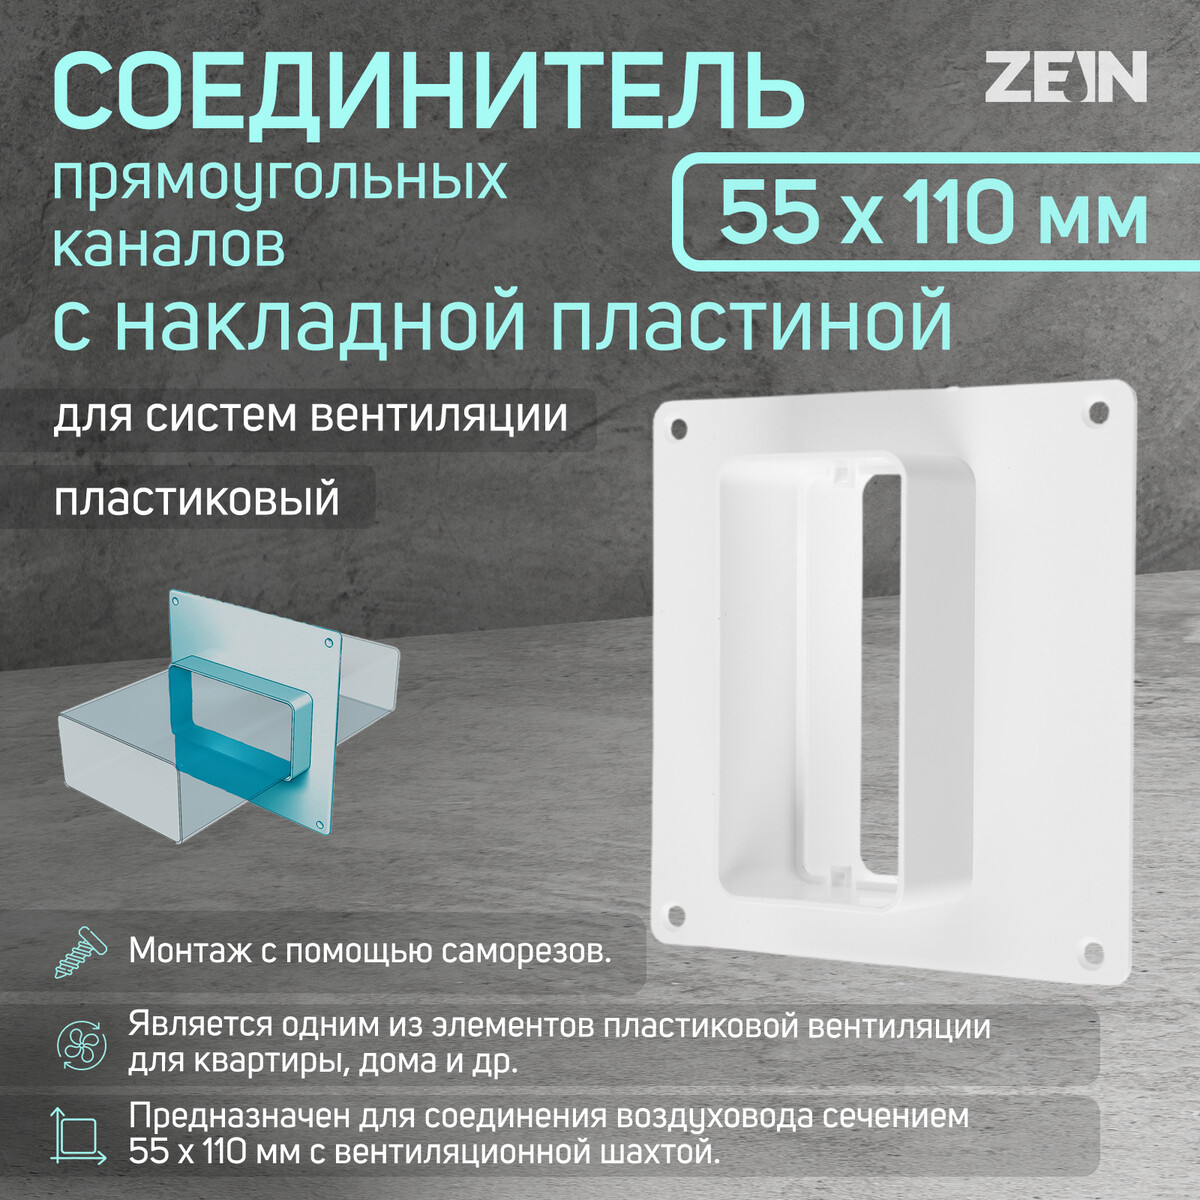 Соединитель вентиляционных каналов zein, 55 х 110 мм, с накладной пластиной